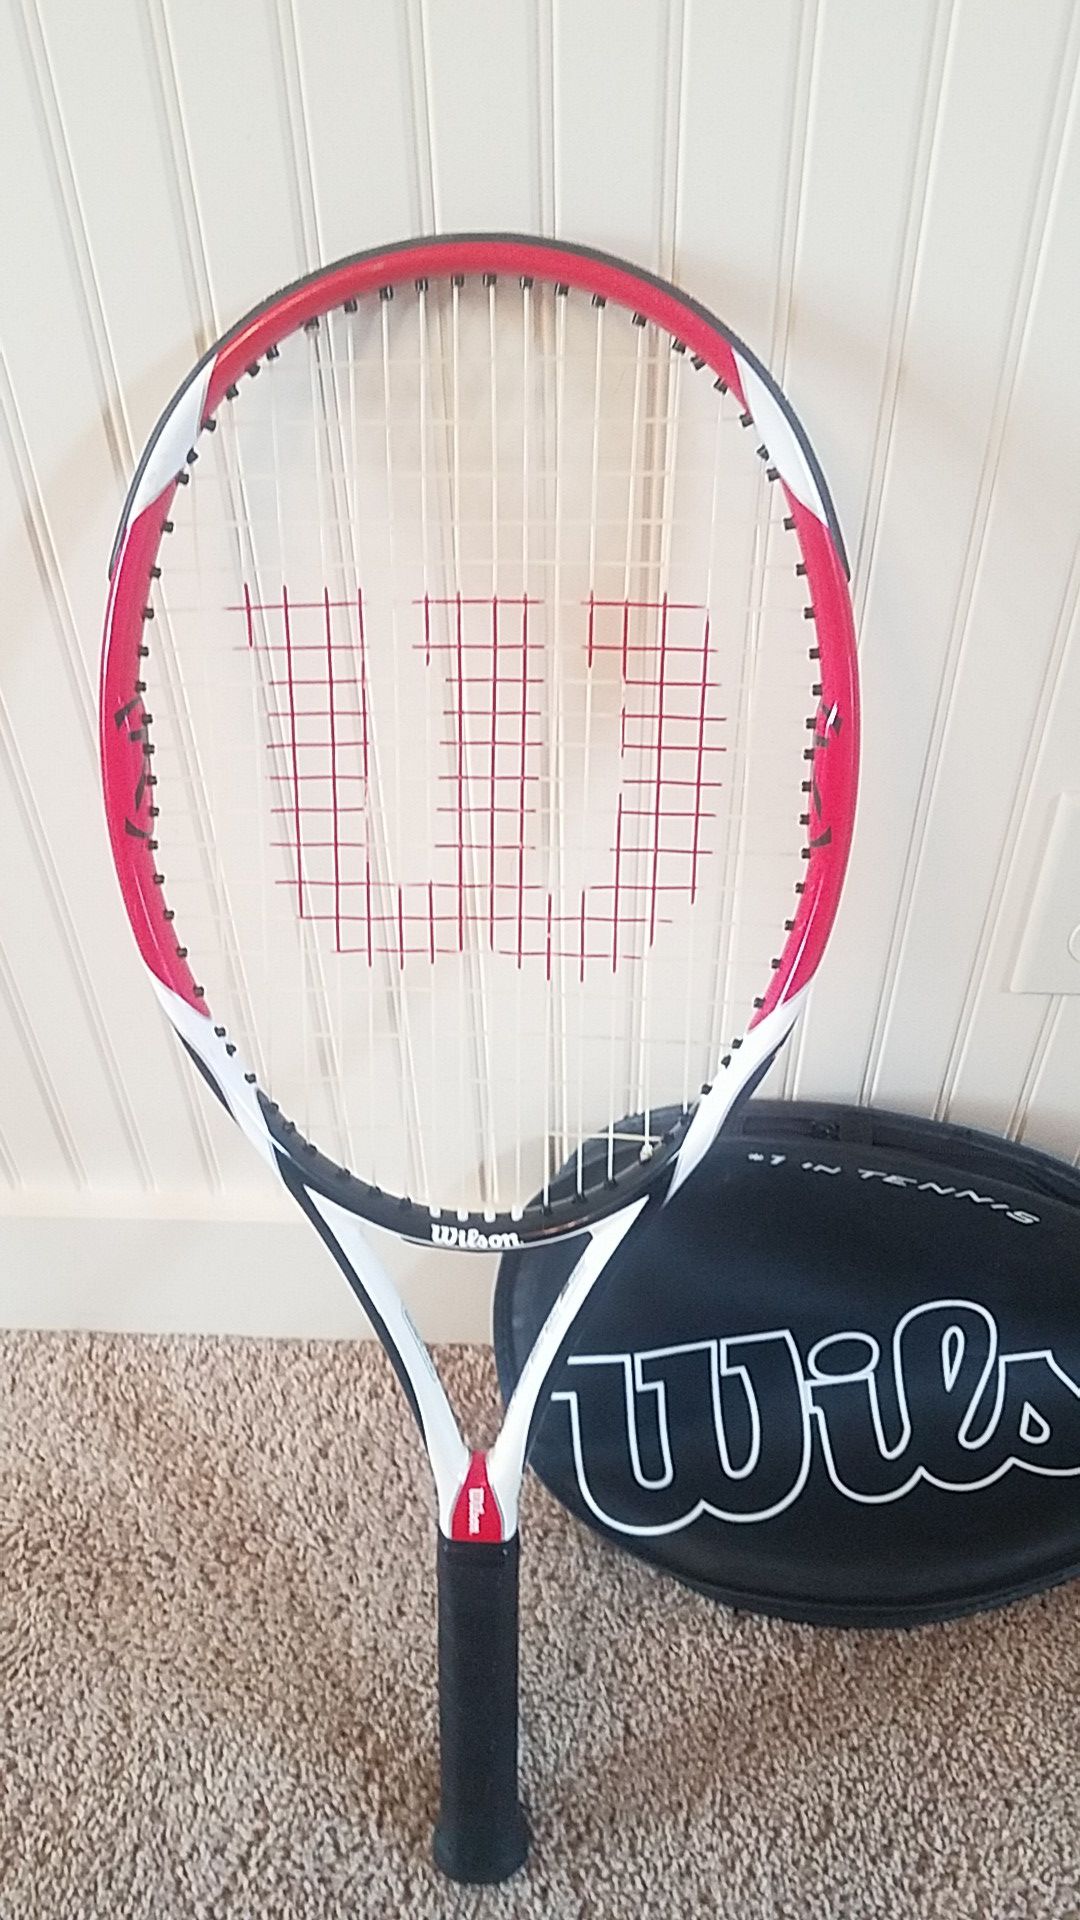 Wilson tennis racket K Factor.